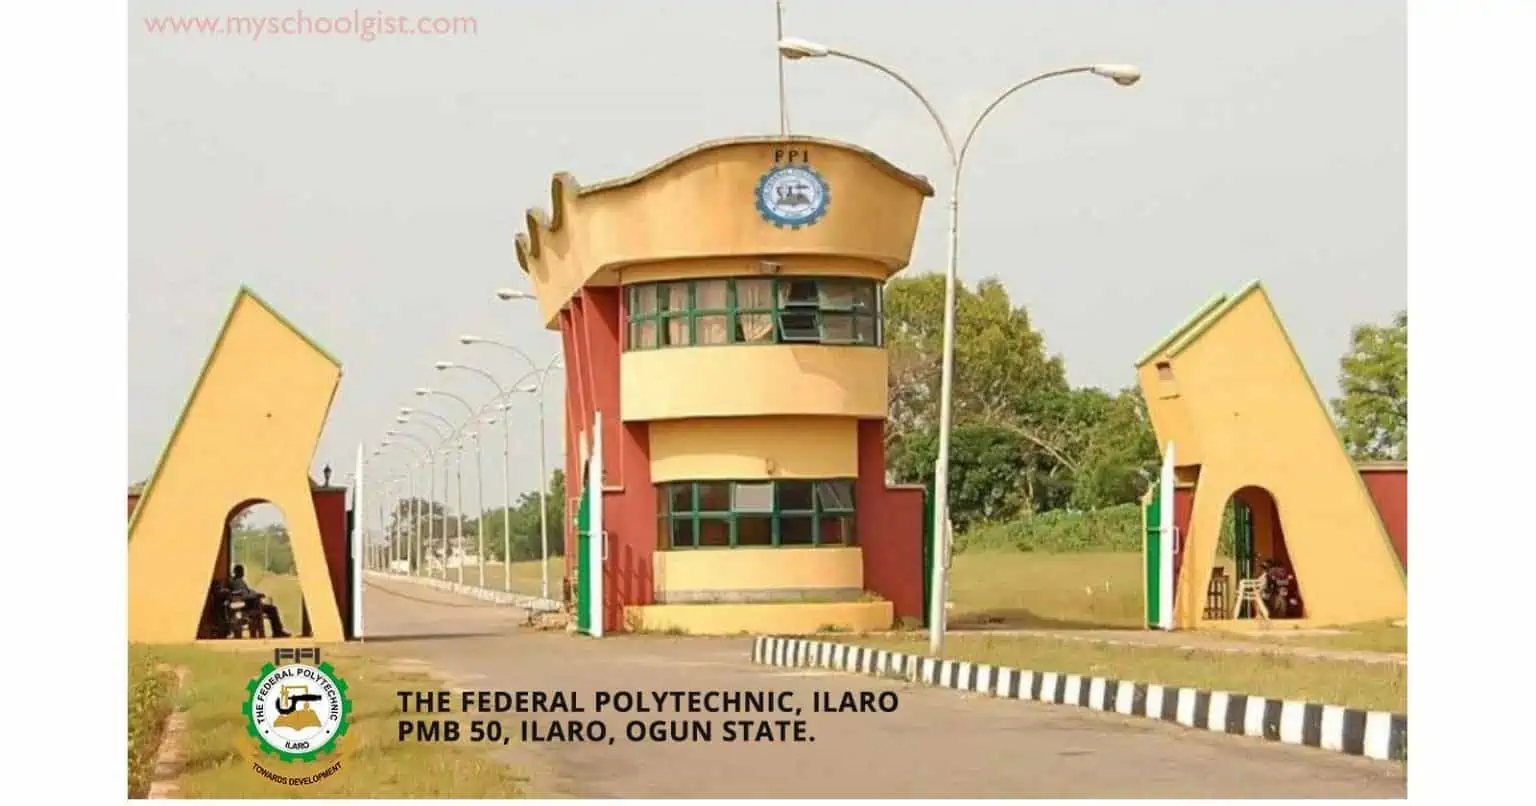 Federal Polytechnic Ilaro ILAROPOLY Ogun State 1536x806 1